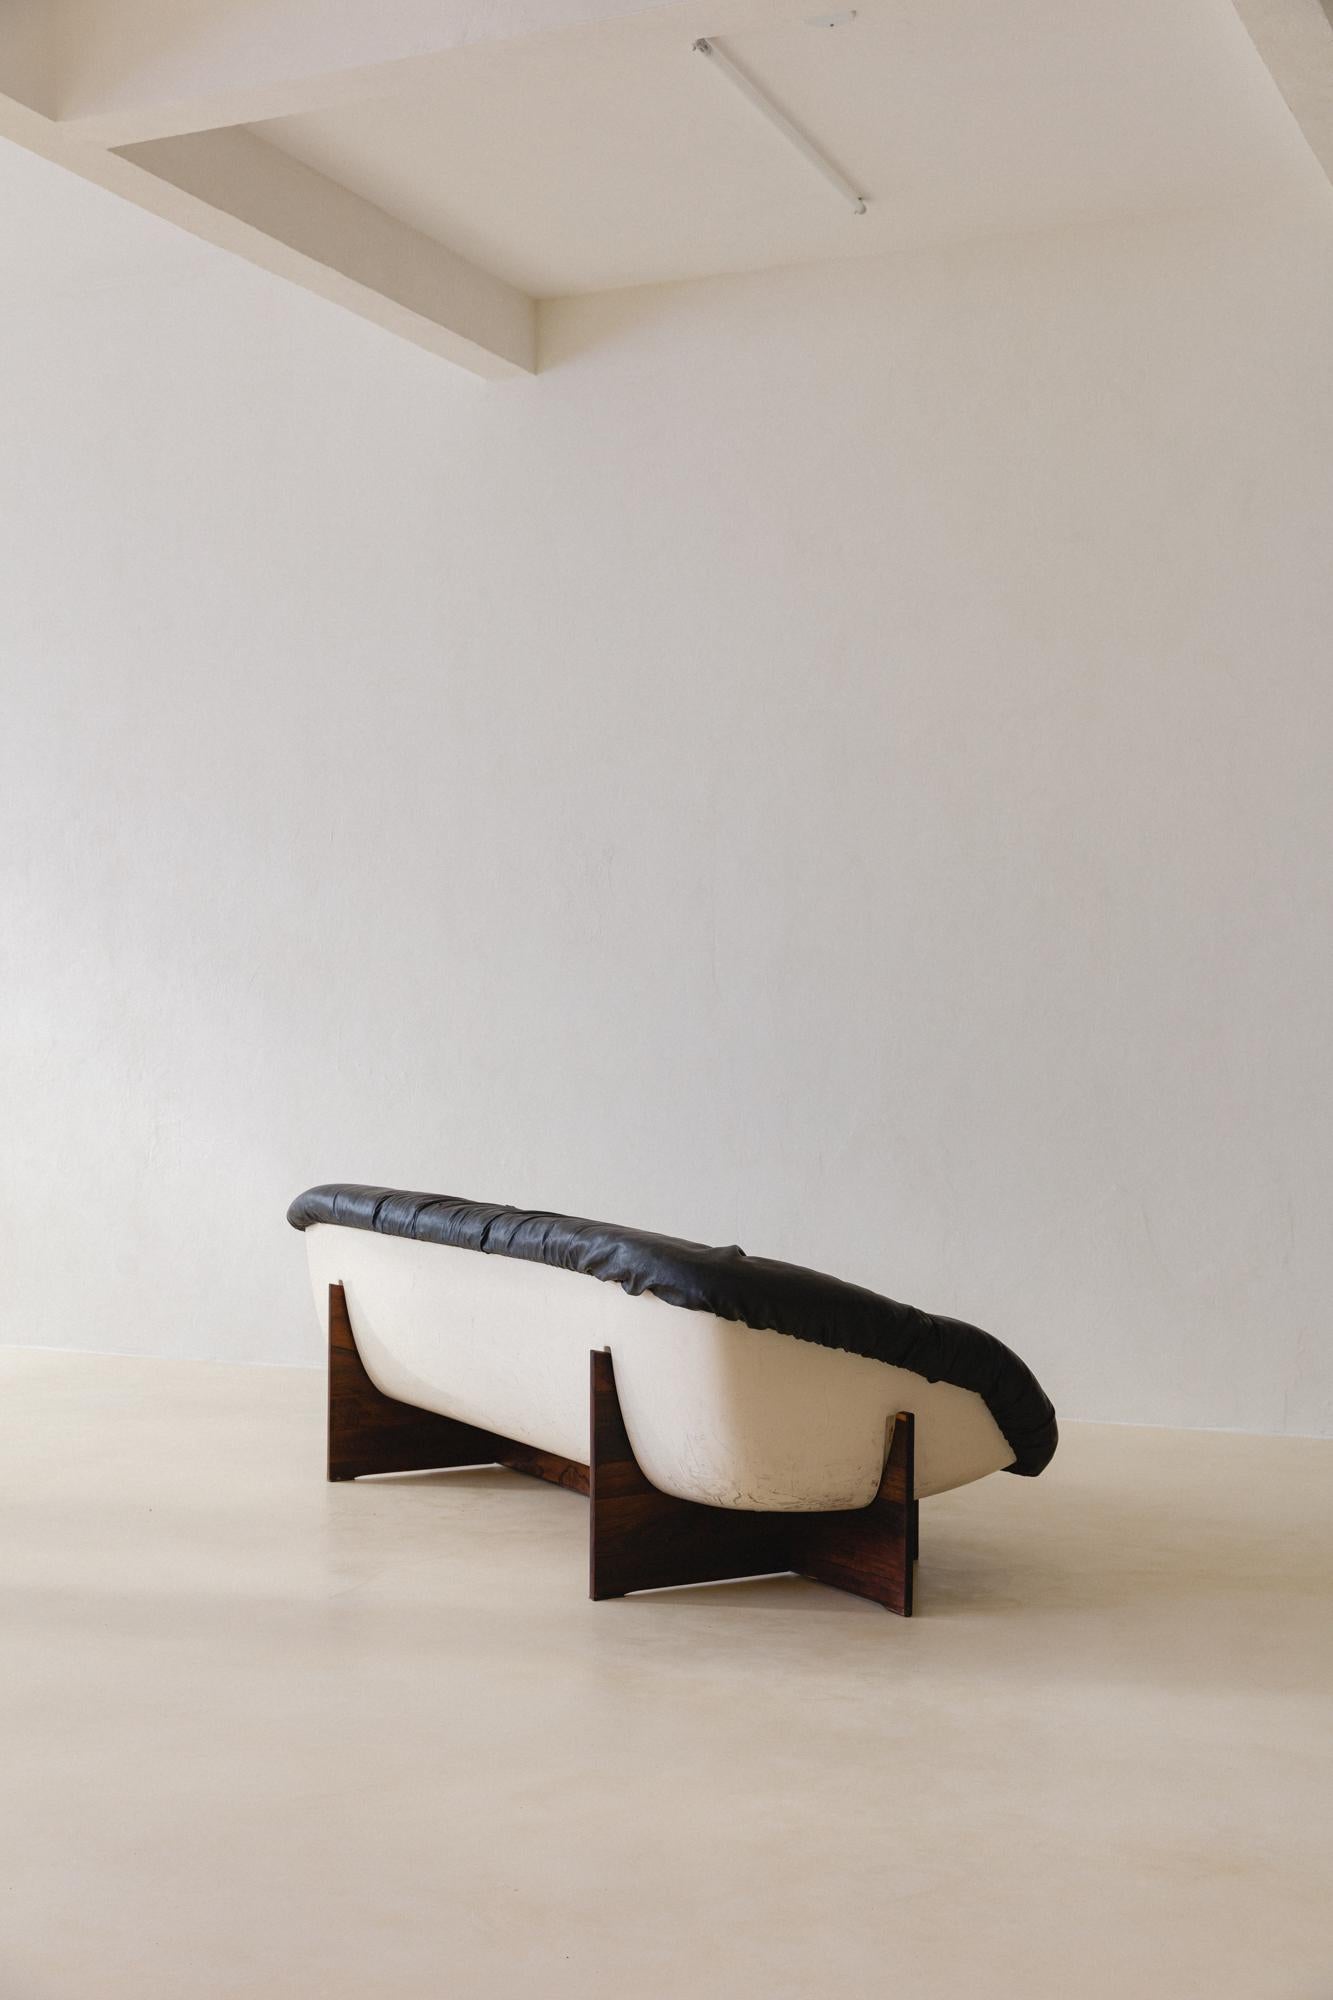 Bei seinen Entwürfen setzte Percival Lafer auf Ergonomie und Komfort. Das Sofa und der Sessel MP-61 aus dem Jahr 1973 waren die ersten beiden von Percival Lafer entworfenen Möbelstücke, die eine sichtbare Glasfaserschalenstruktur aufwiesen. Die